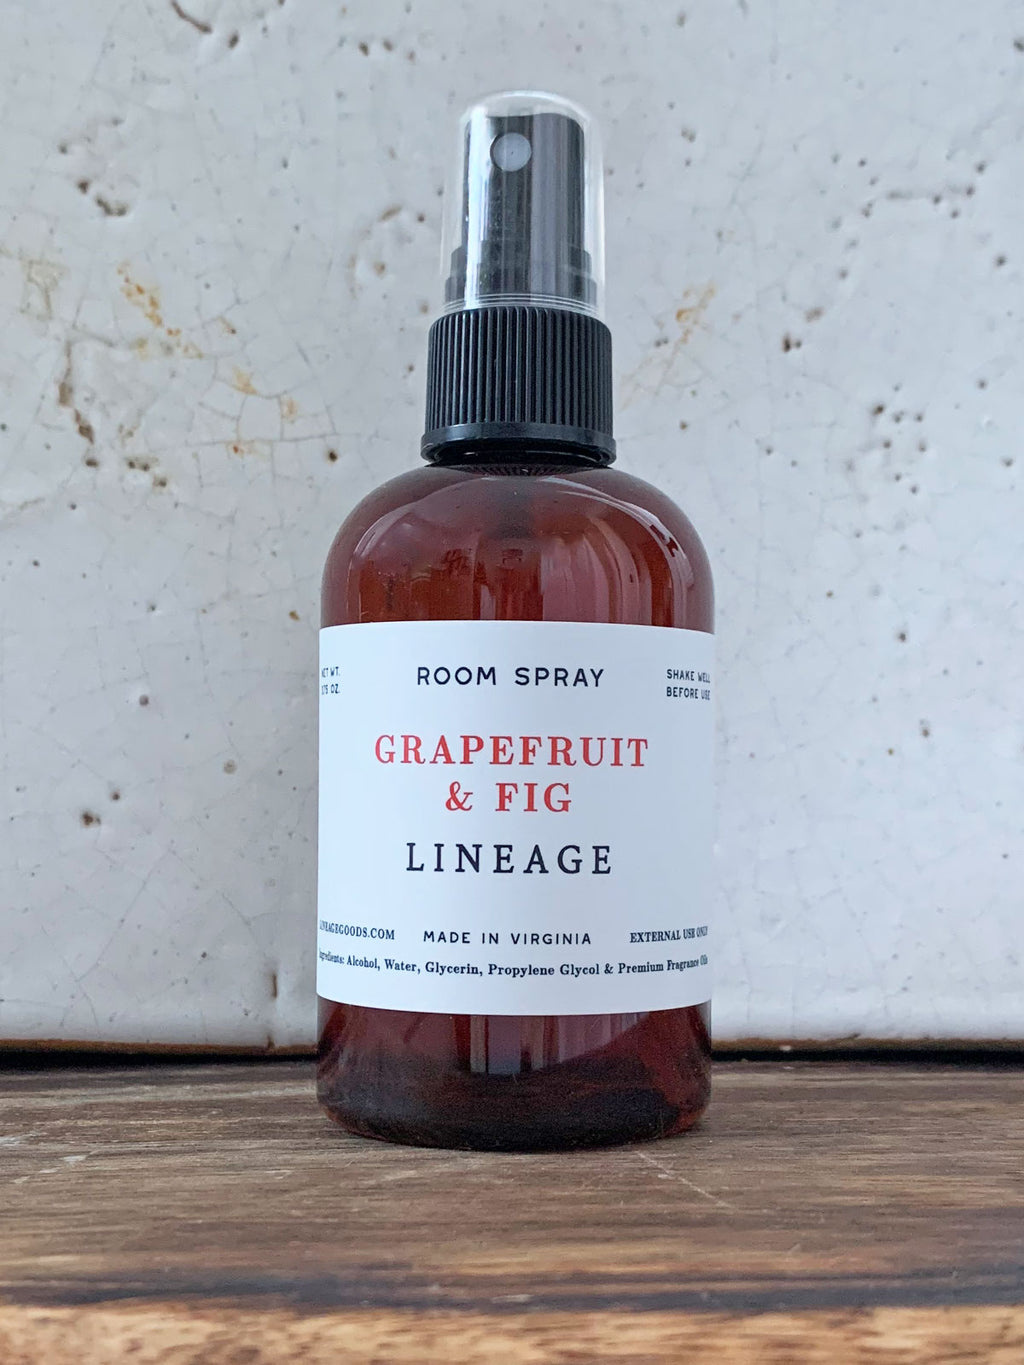 LINEAGE - Grapefruit & Fig Room Spray